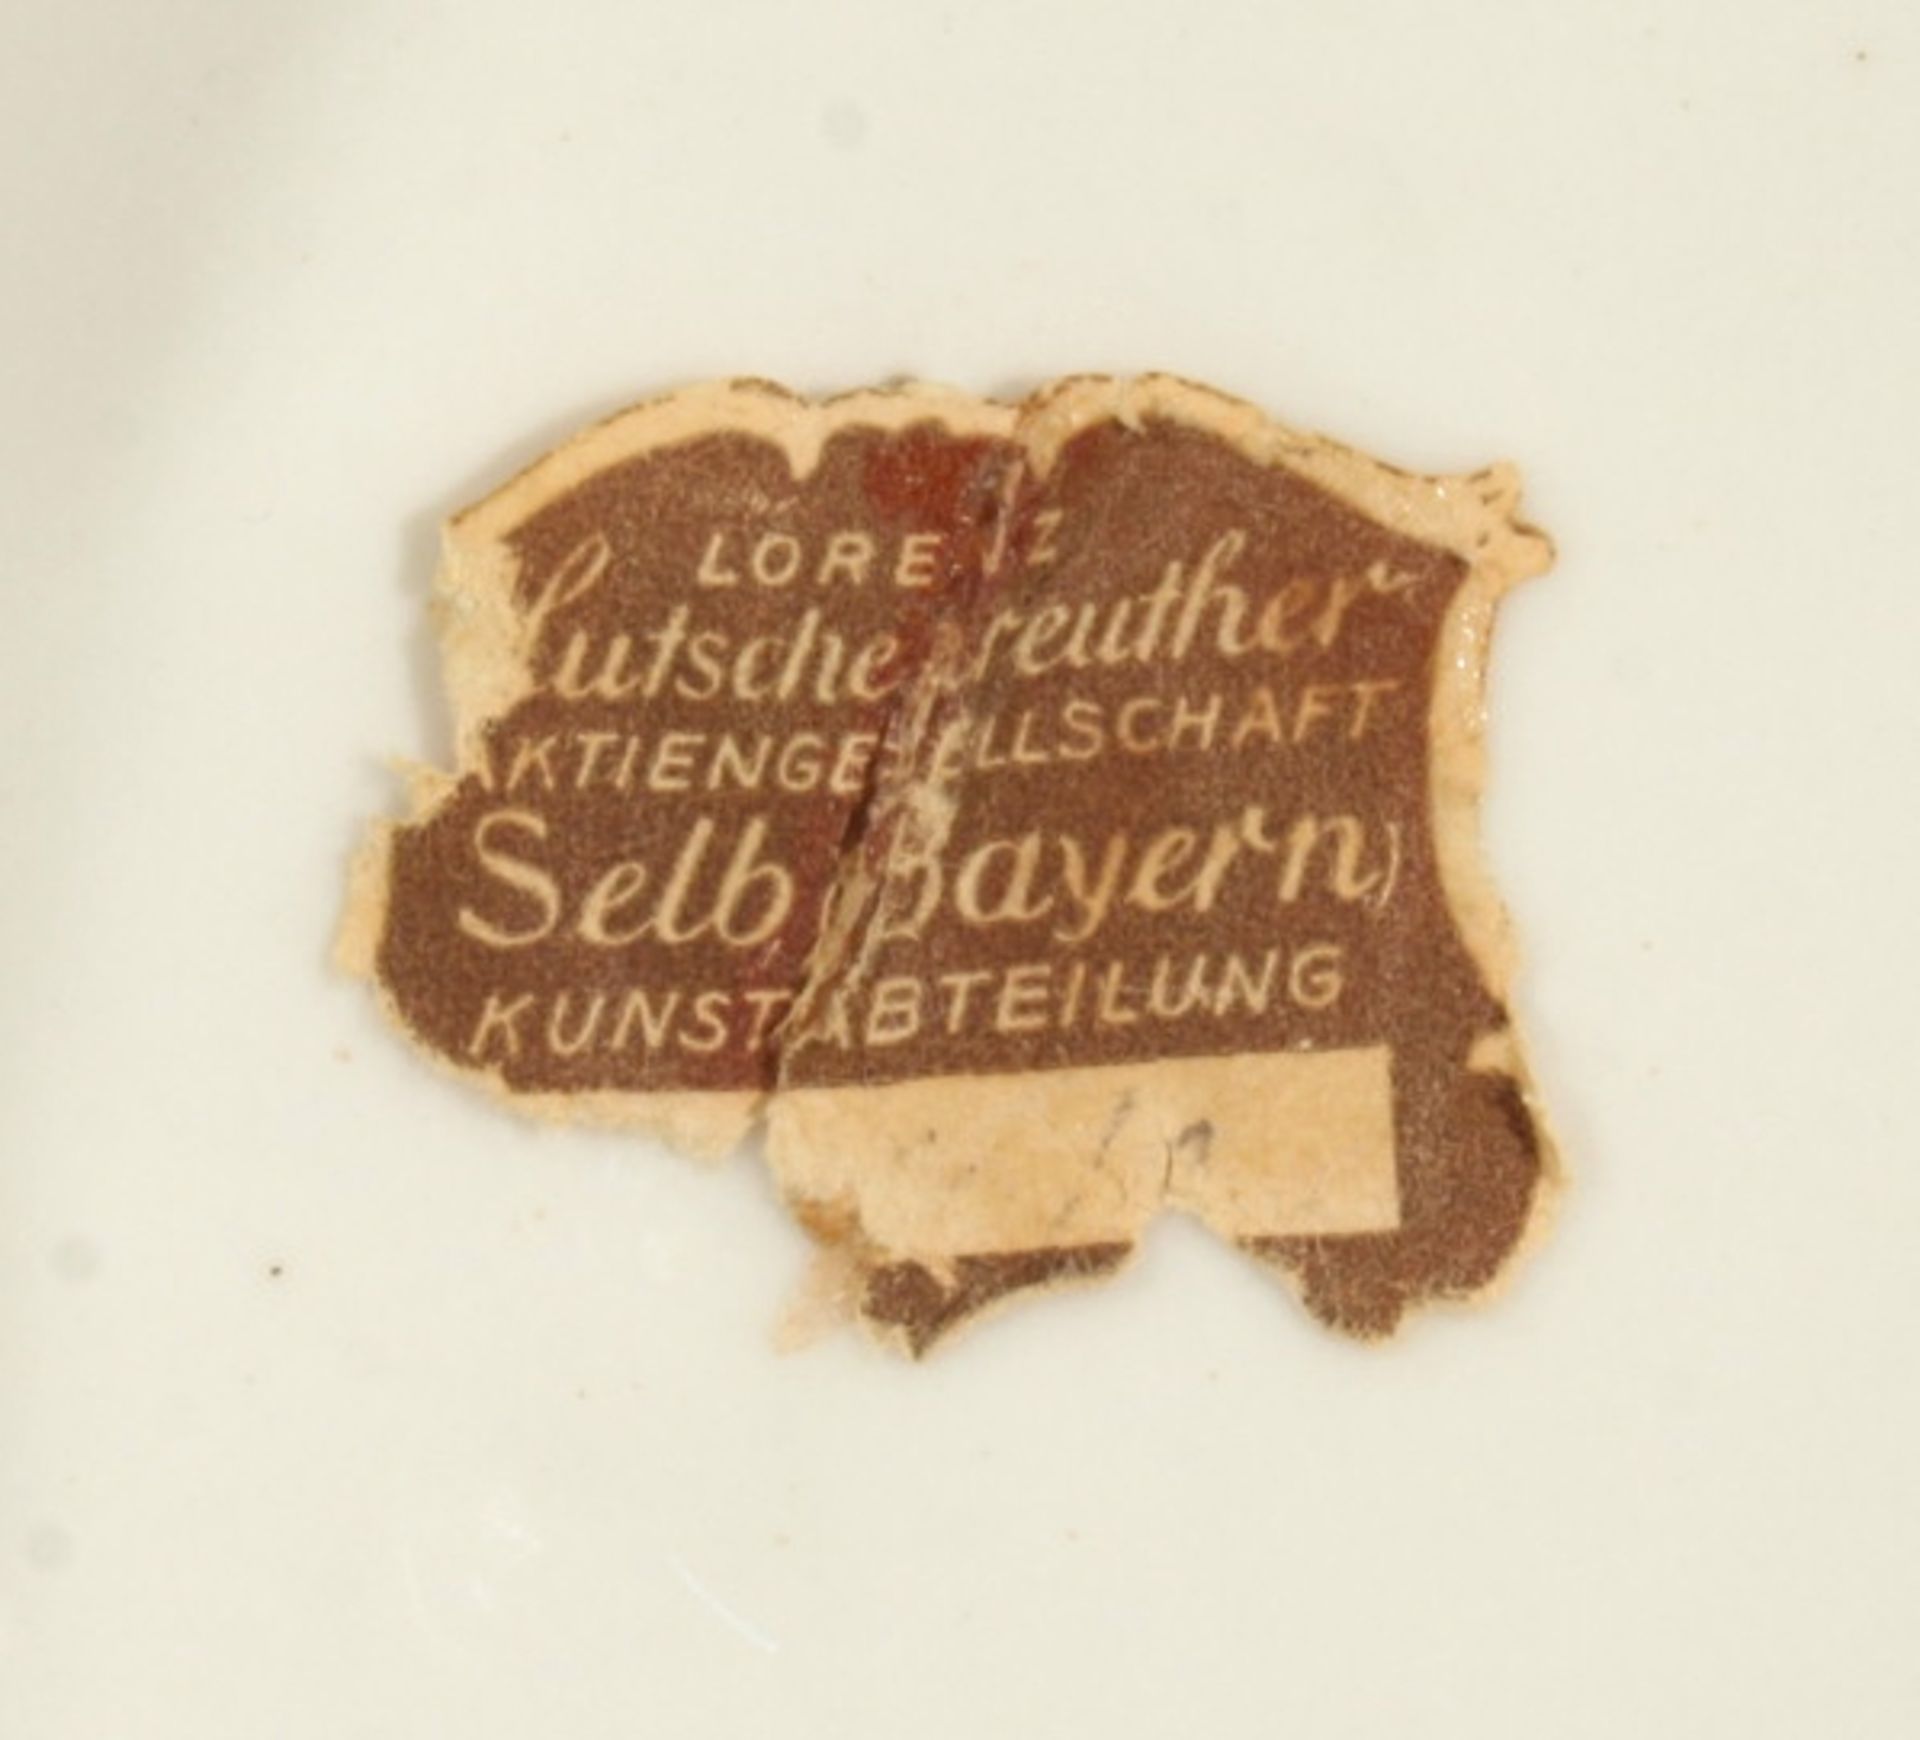 Porzellan-Deckeldose, "Kleine Schnitterin", Lorenz Hutschenreuther, Kunstabteilung, um1965-67, - Bild 5 aus 5